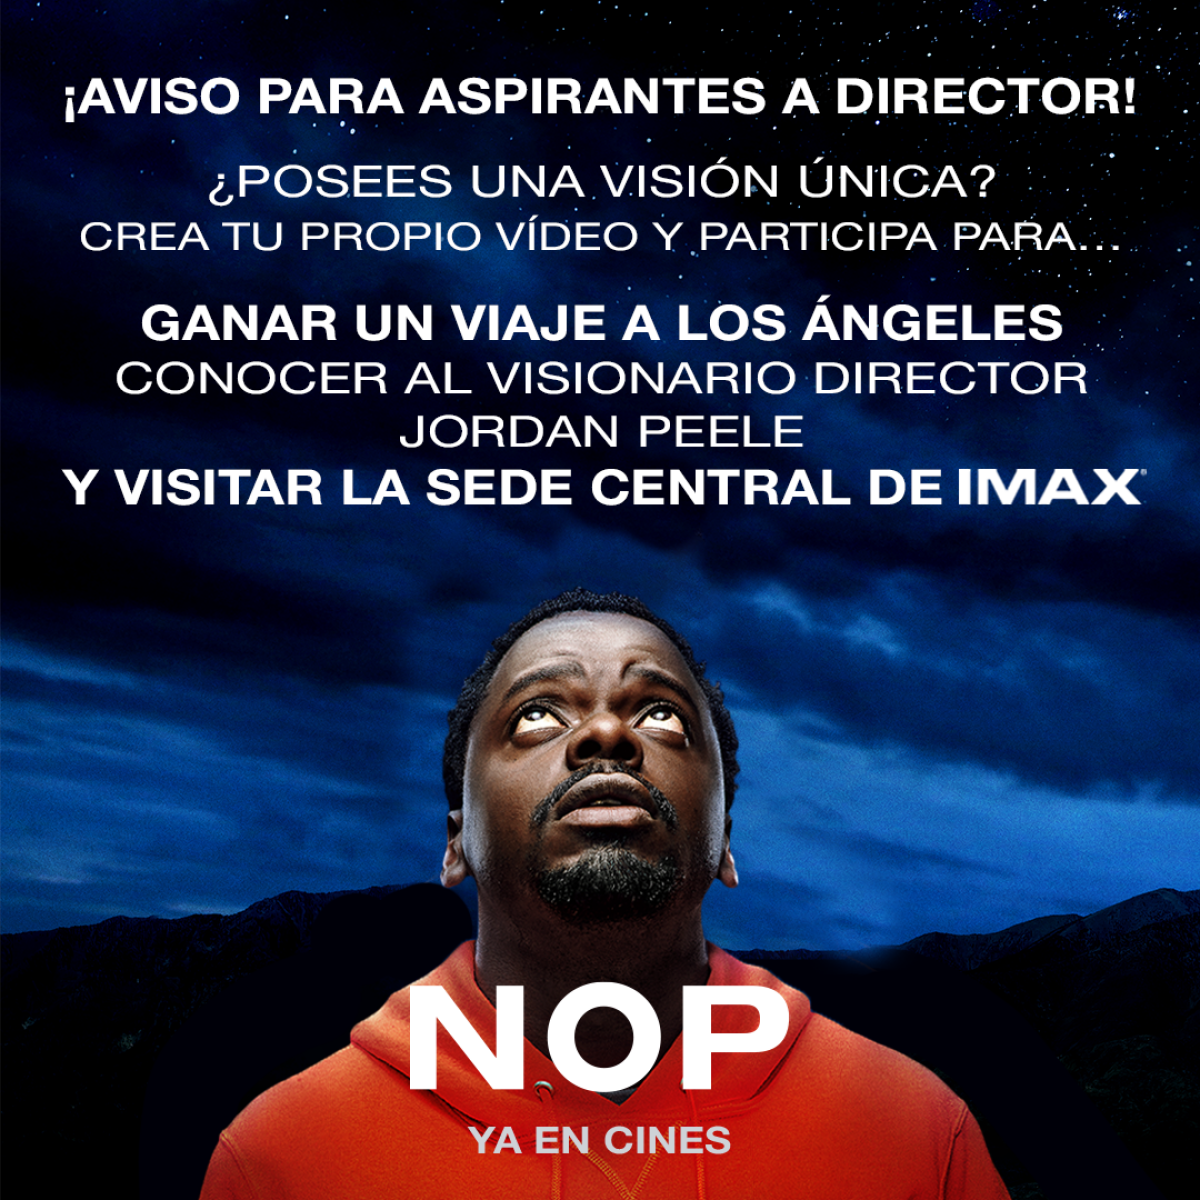 ¡Vuela a Los Ángeles, visita la sede central de IMAX y conoce a Jordan Peele!